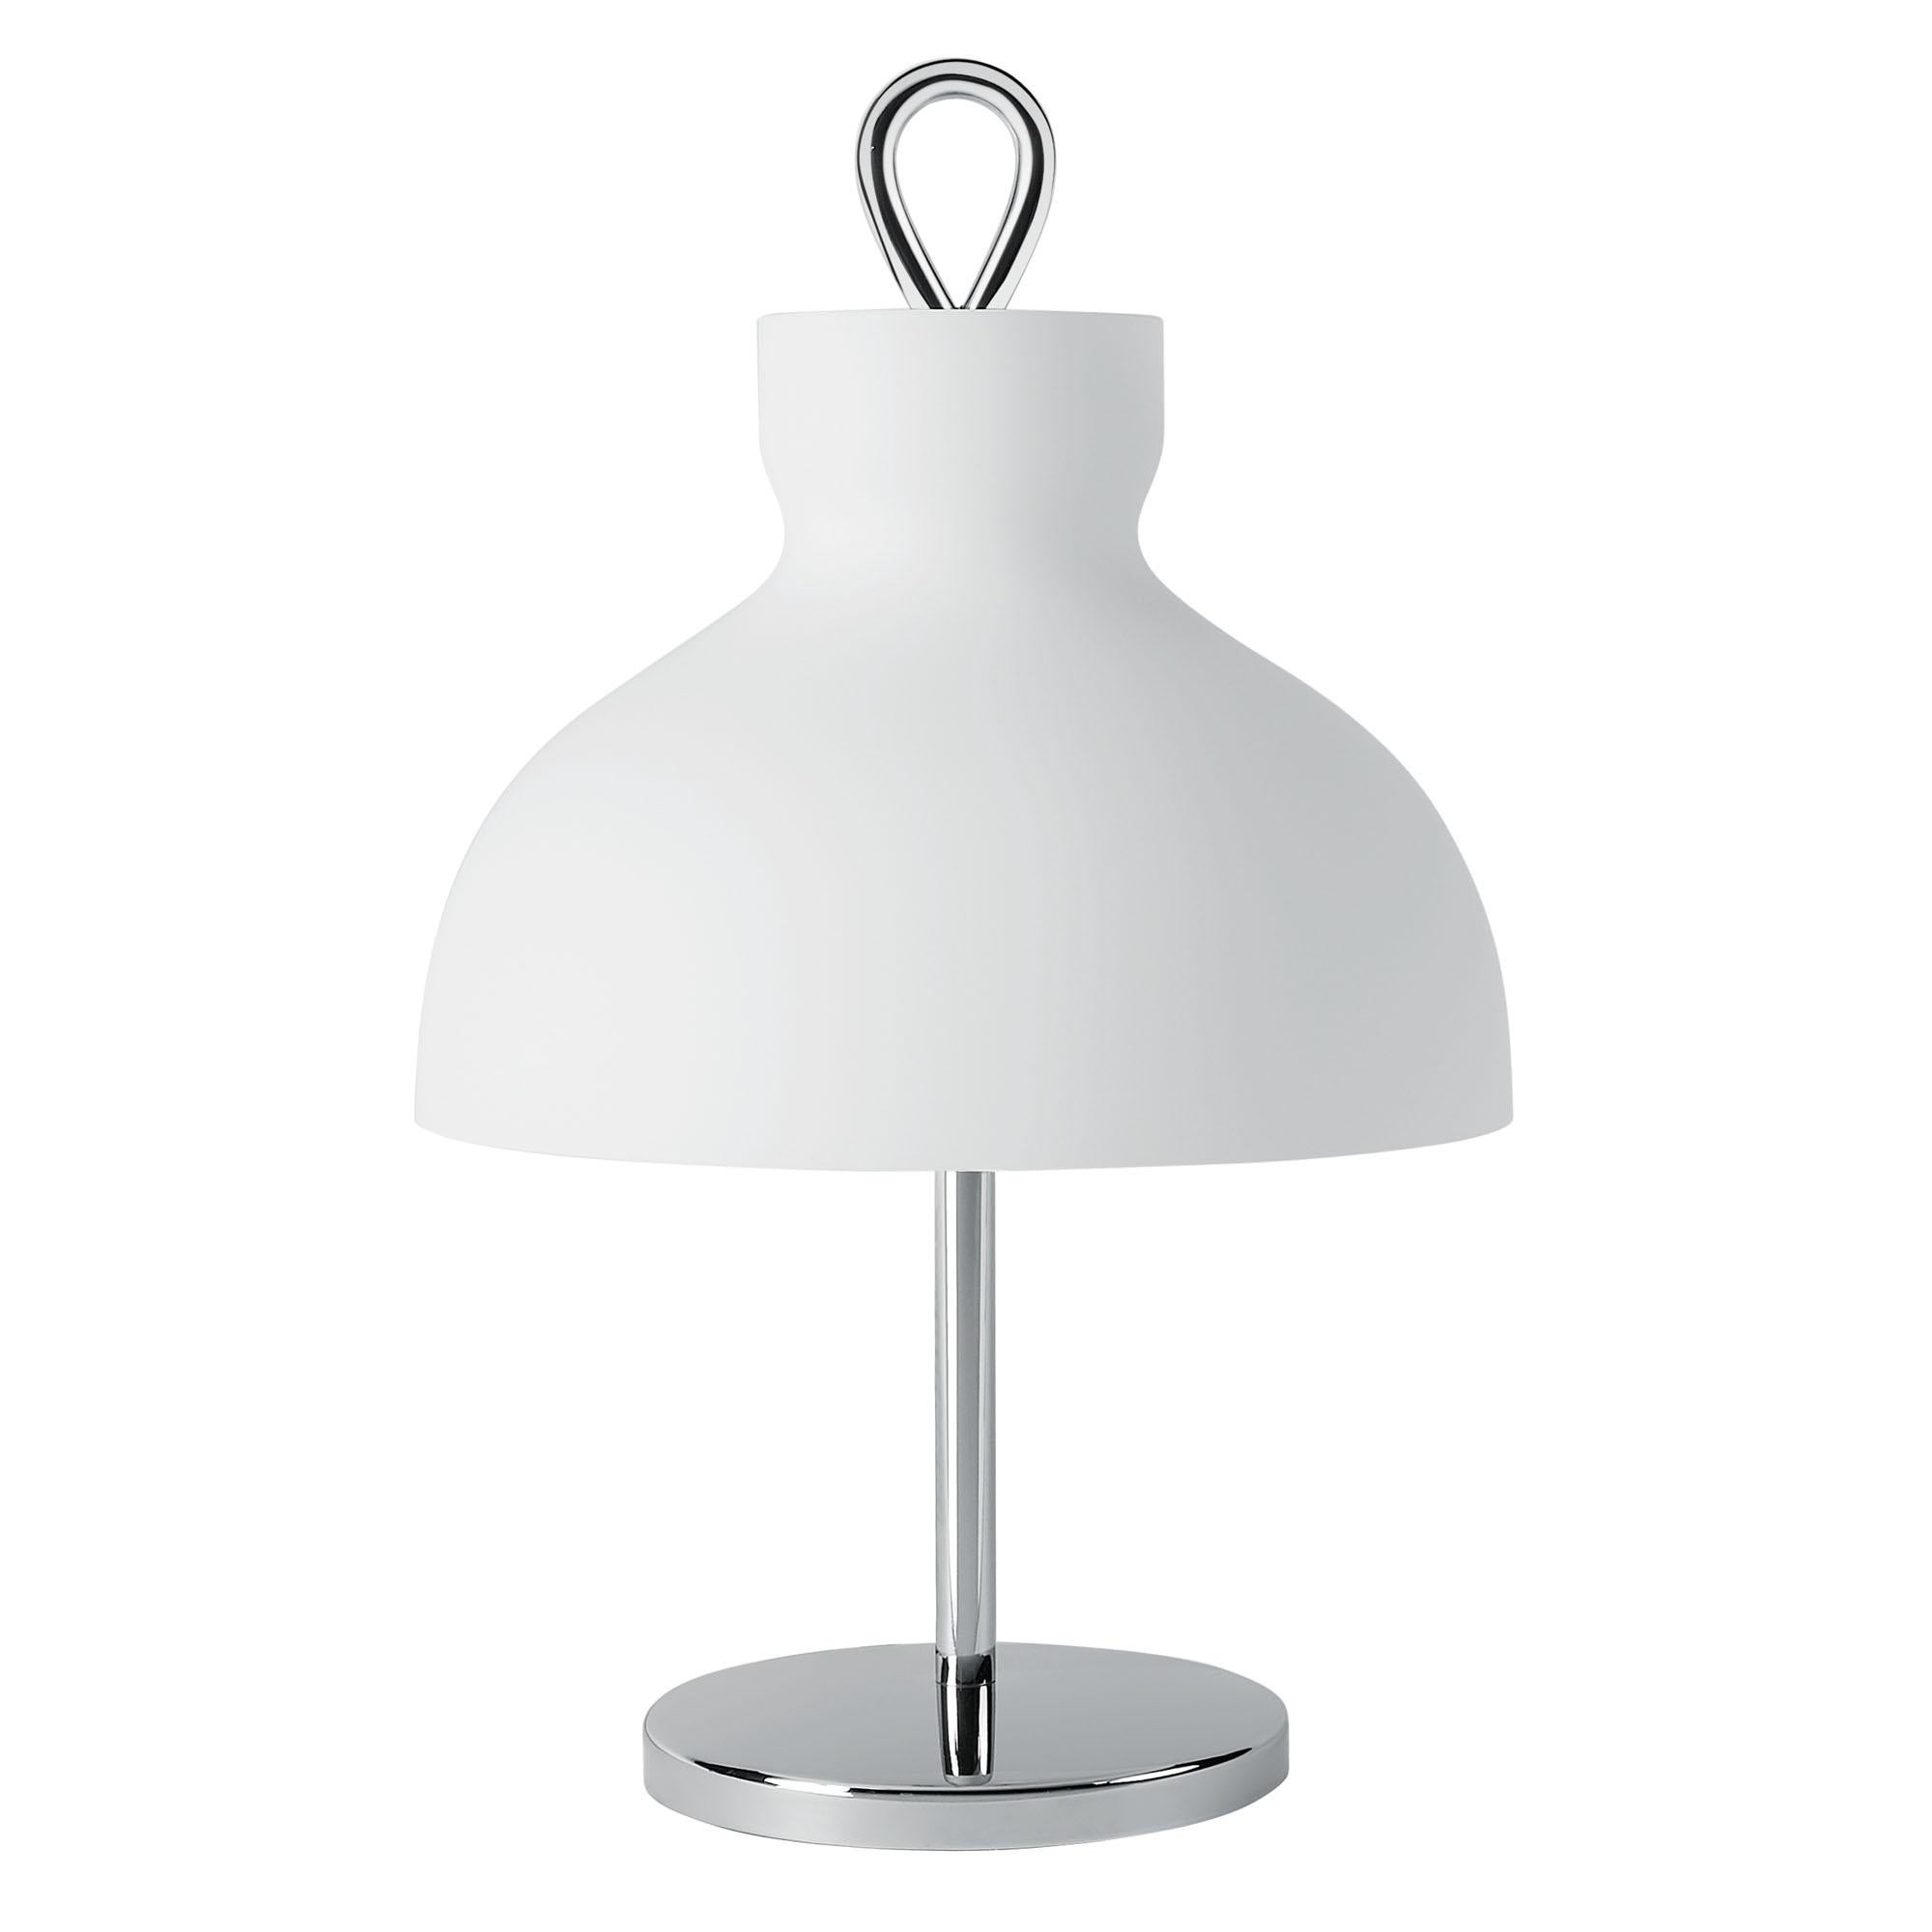 Arenzano Bassa, Low Table Lamp by Ignazio Gardella for TATO In New Condition For Sale In Gargallo, NO